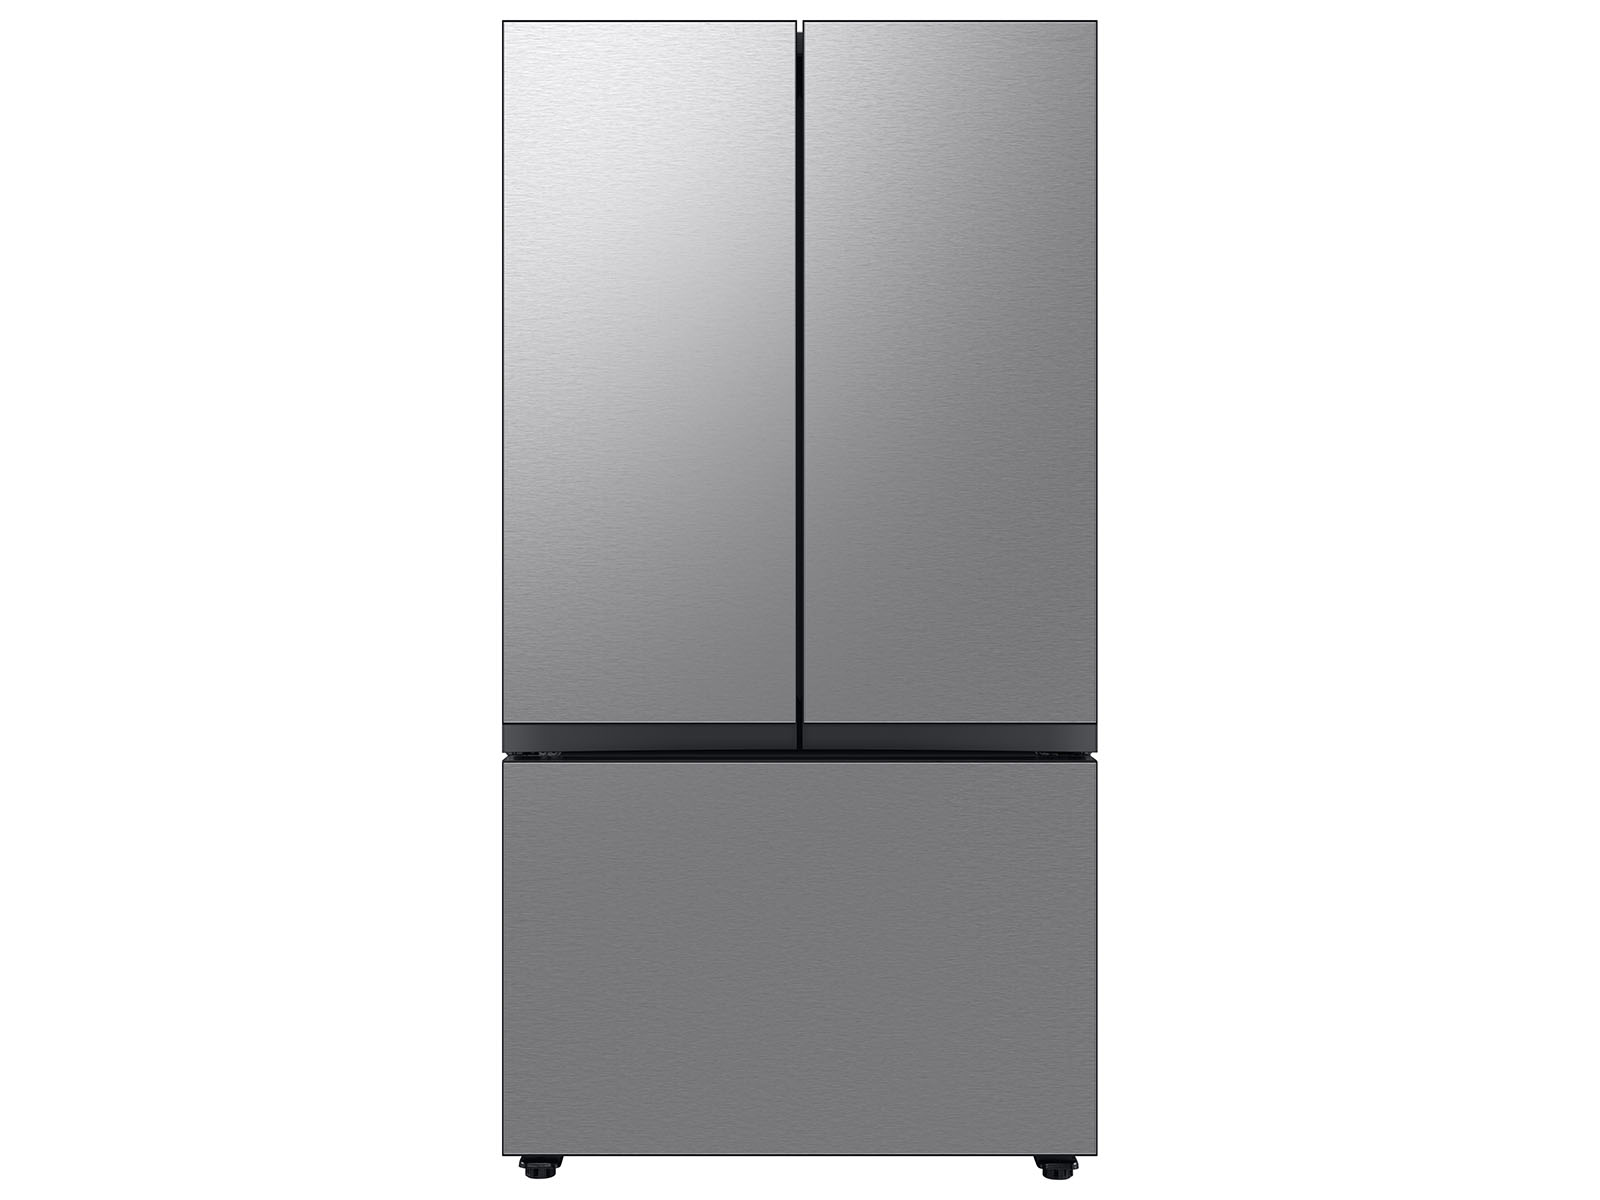 Photos - Fridge Samsung Bespoke 3-Door French Door Refrigerator  with AutoFill (24 cu. ft.)